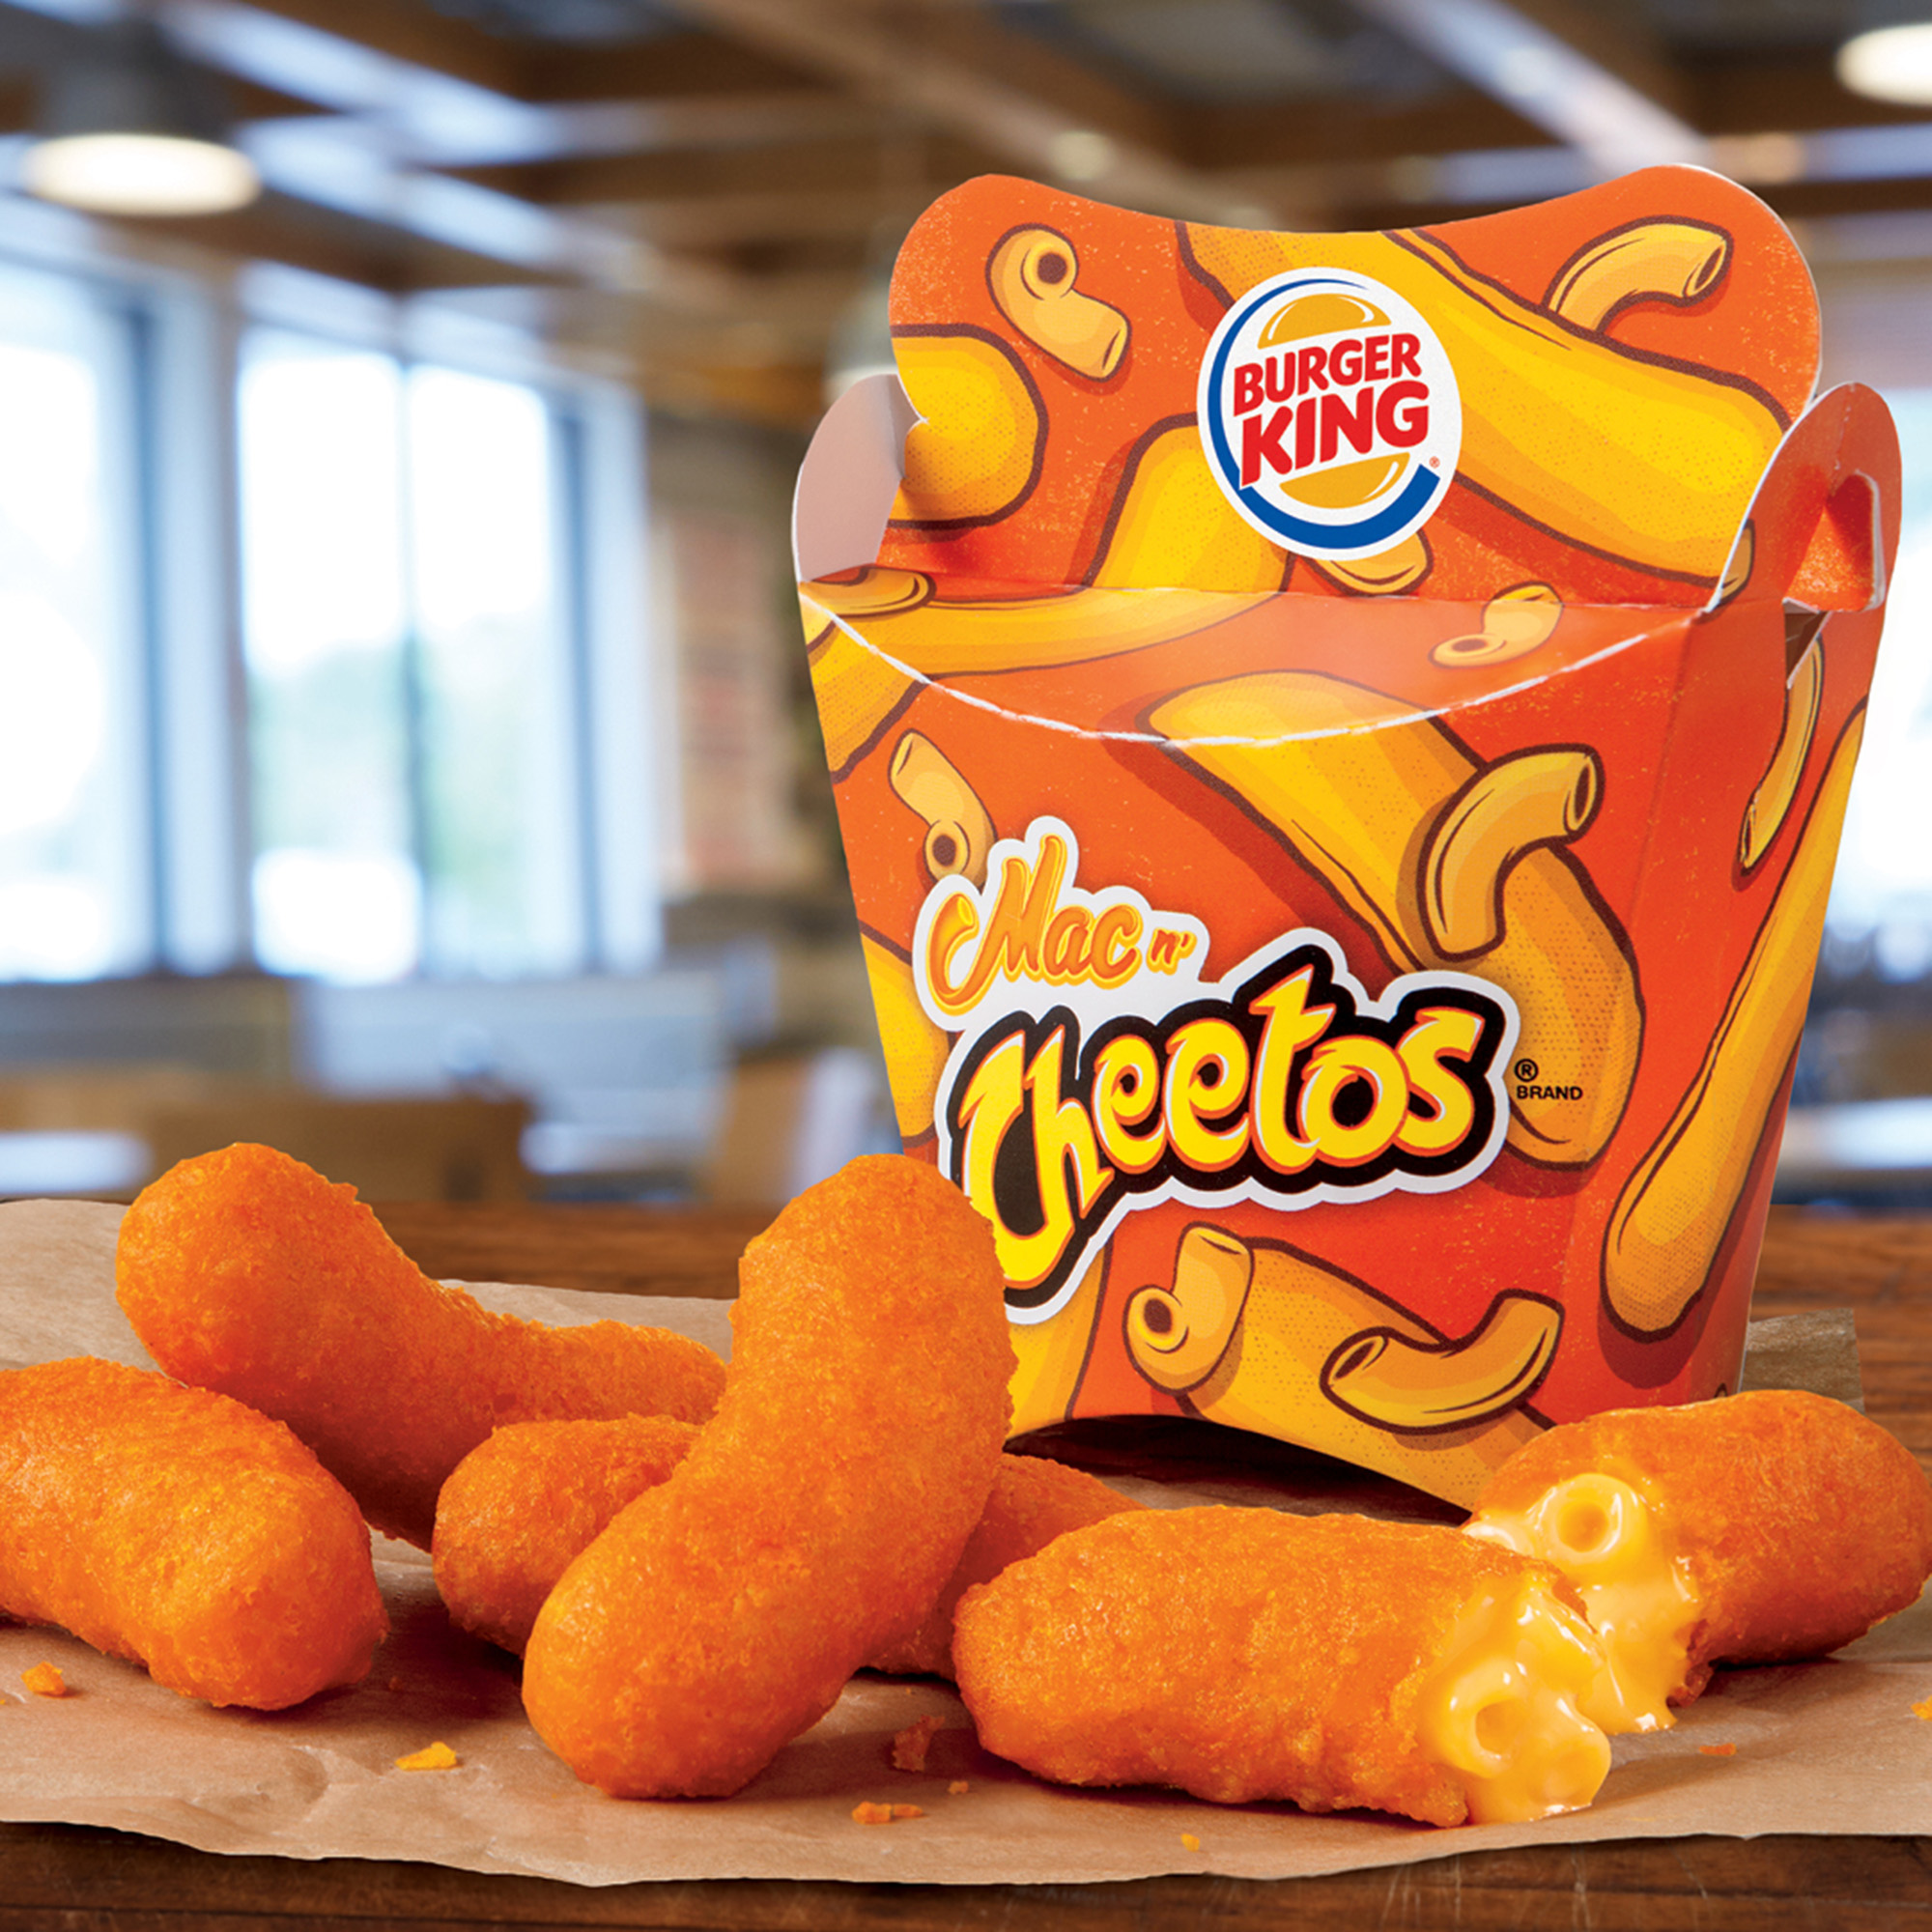 Burger King's new Mac ’n Cheetos
